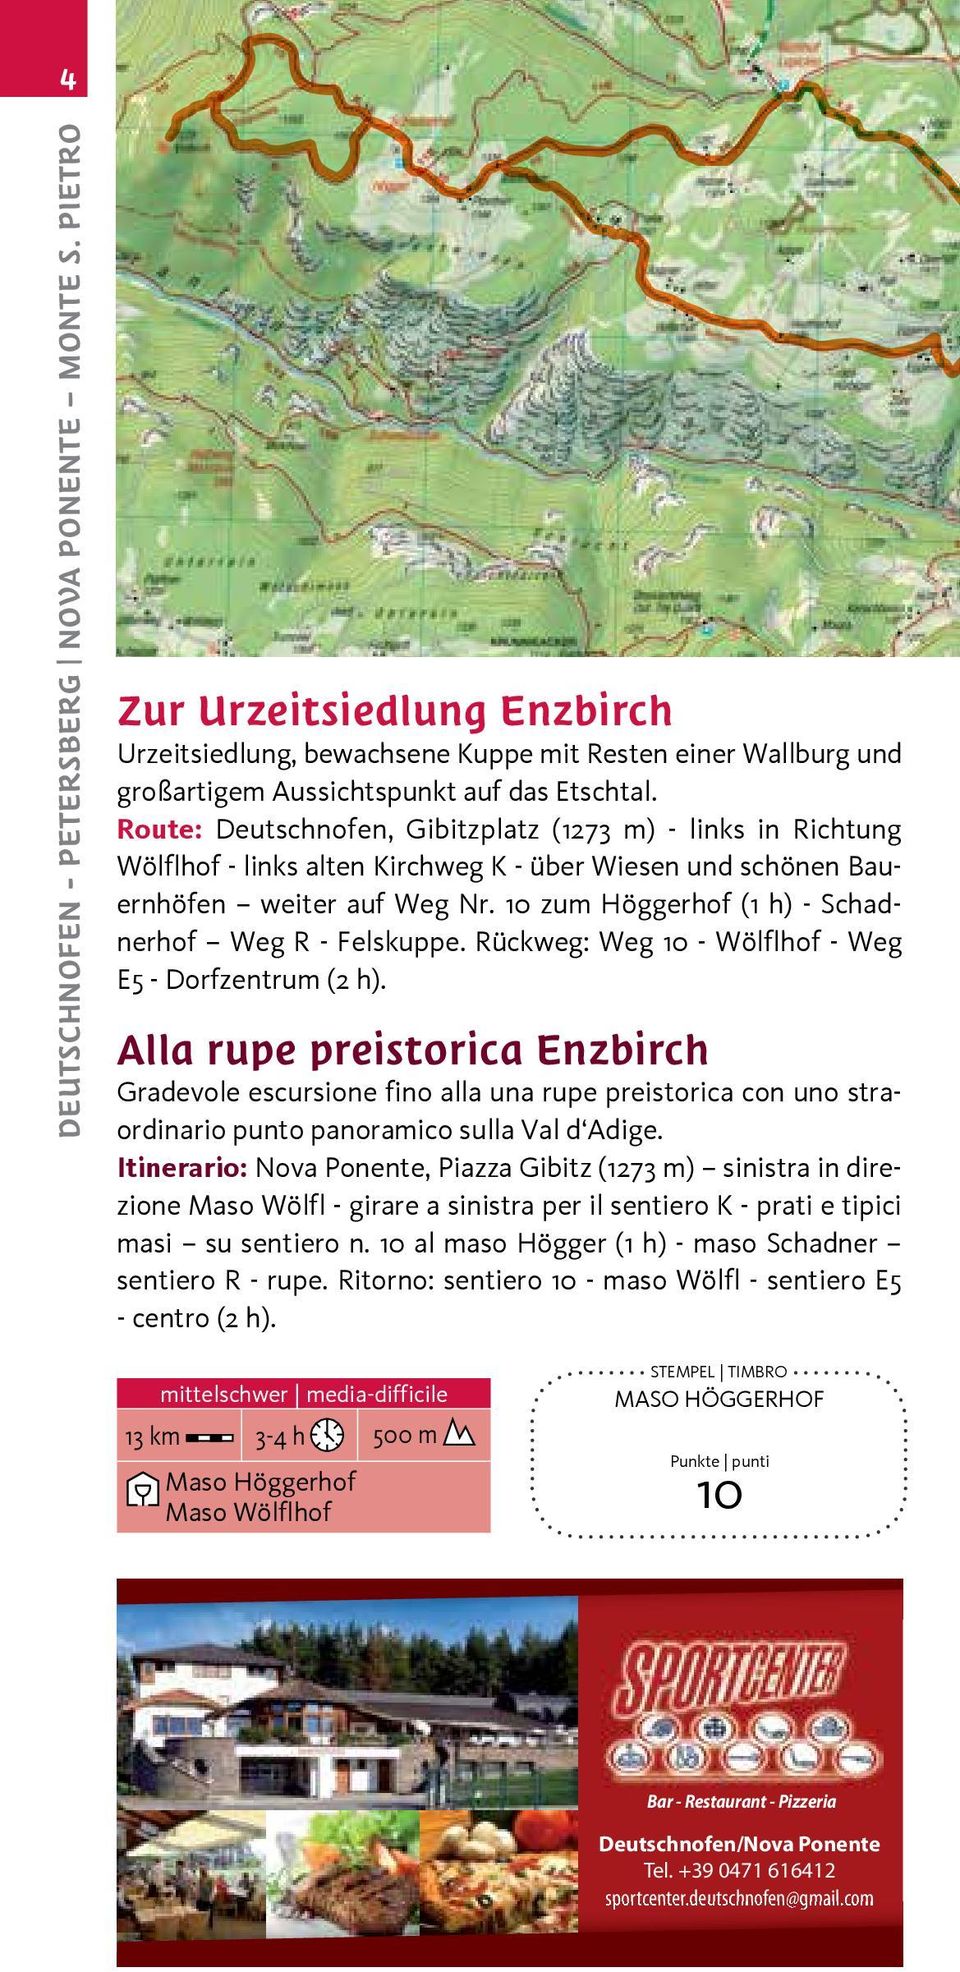 10 zum Höggerhof (1 h) - Schadnerhof Weg R - Felskuppe. Rückweg: Weg 10 - Wölflhof - Weg E5 - Dorfzentrum (2 h).